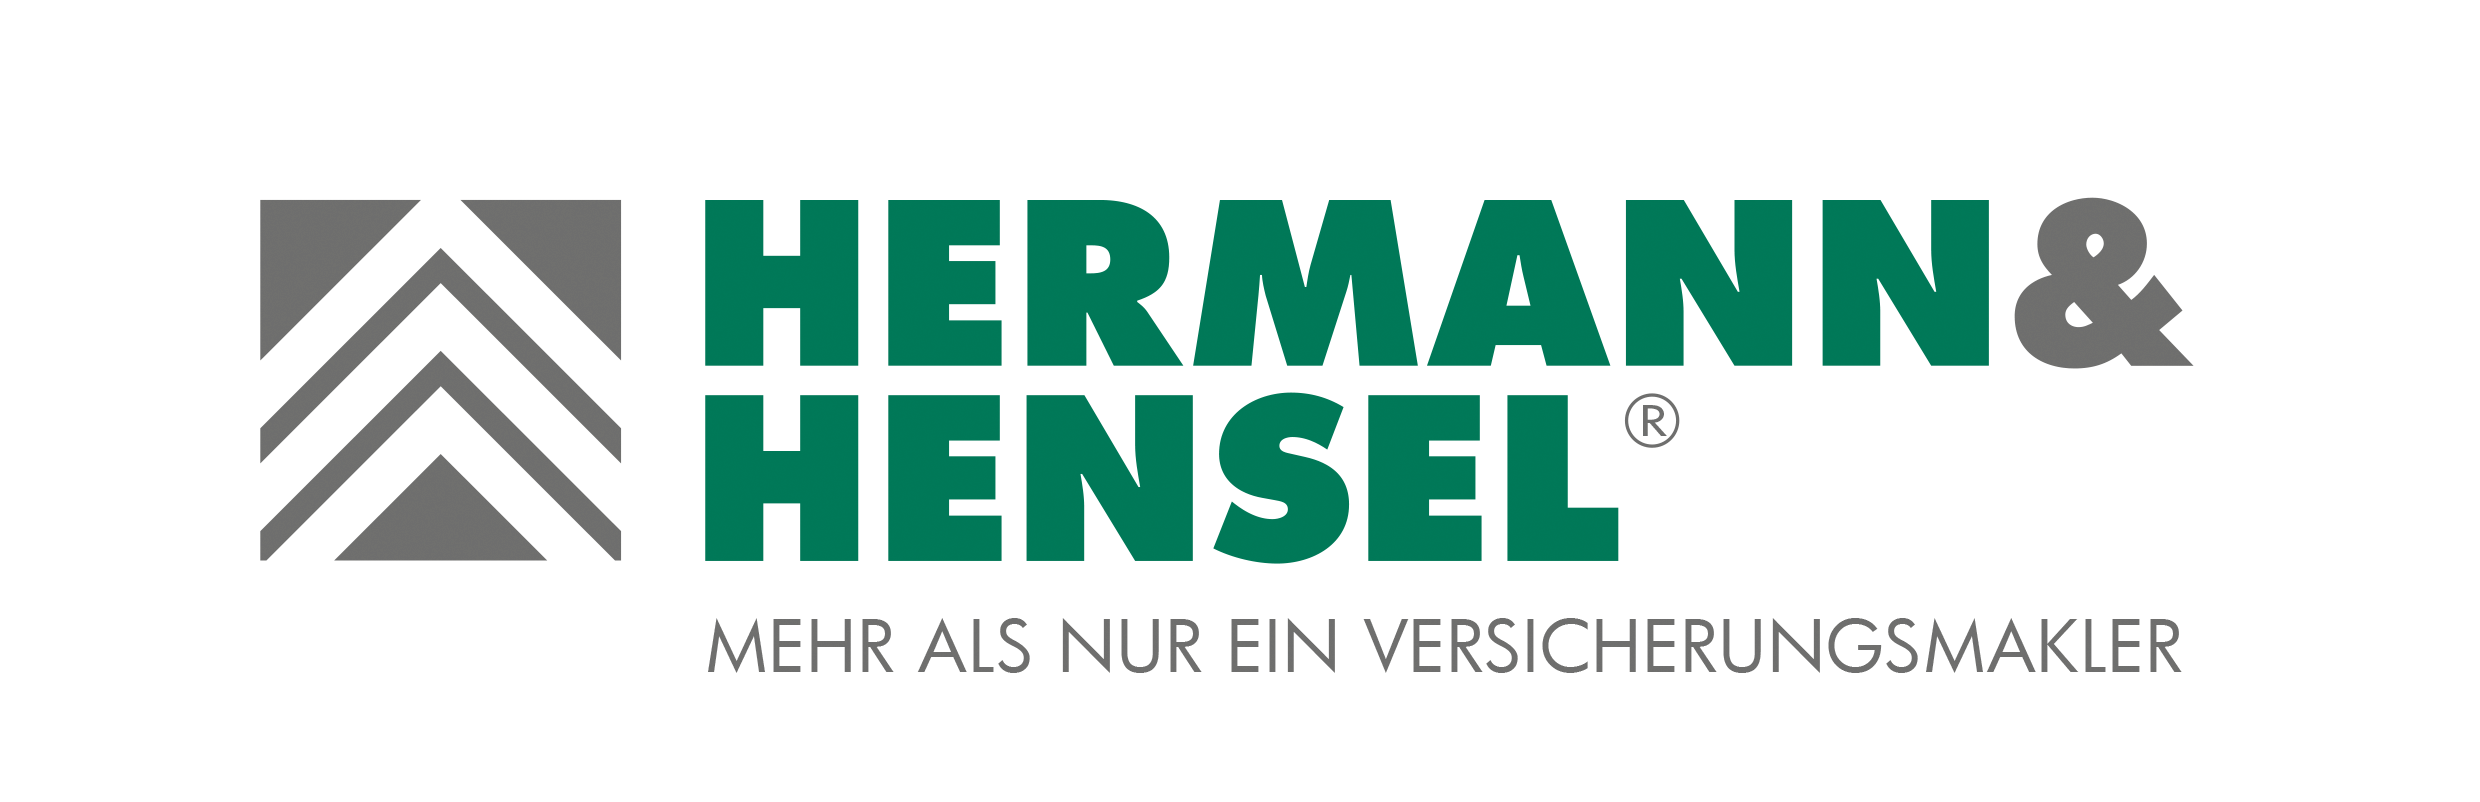 Hermann-und-hensel